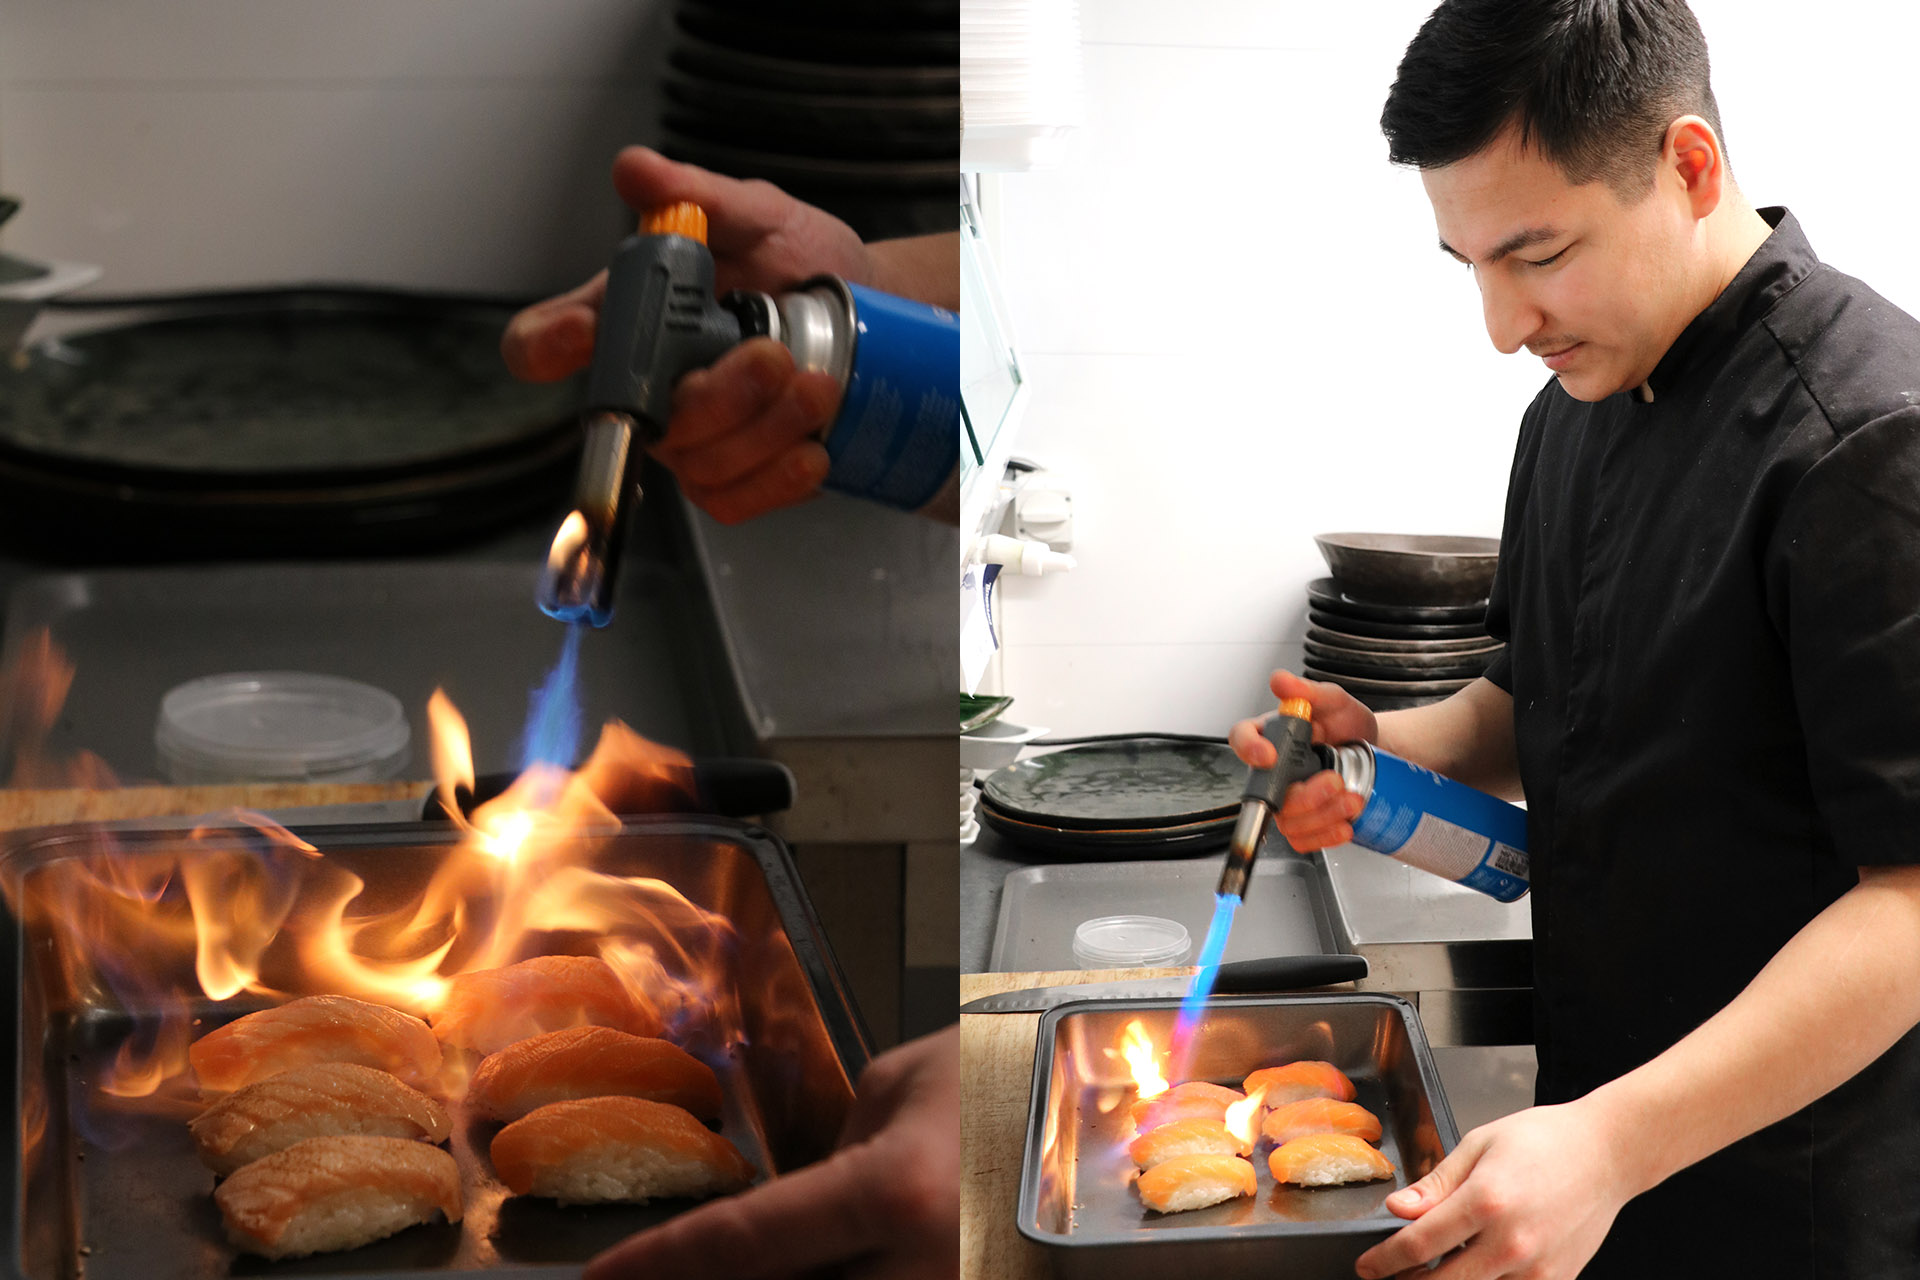 En kille med svart kocktröja står och bränner sushibitar med en liten brännare